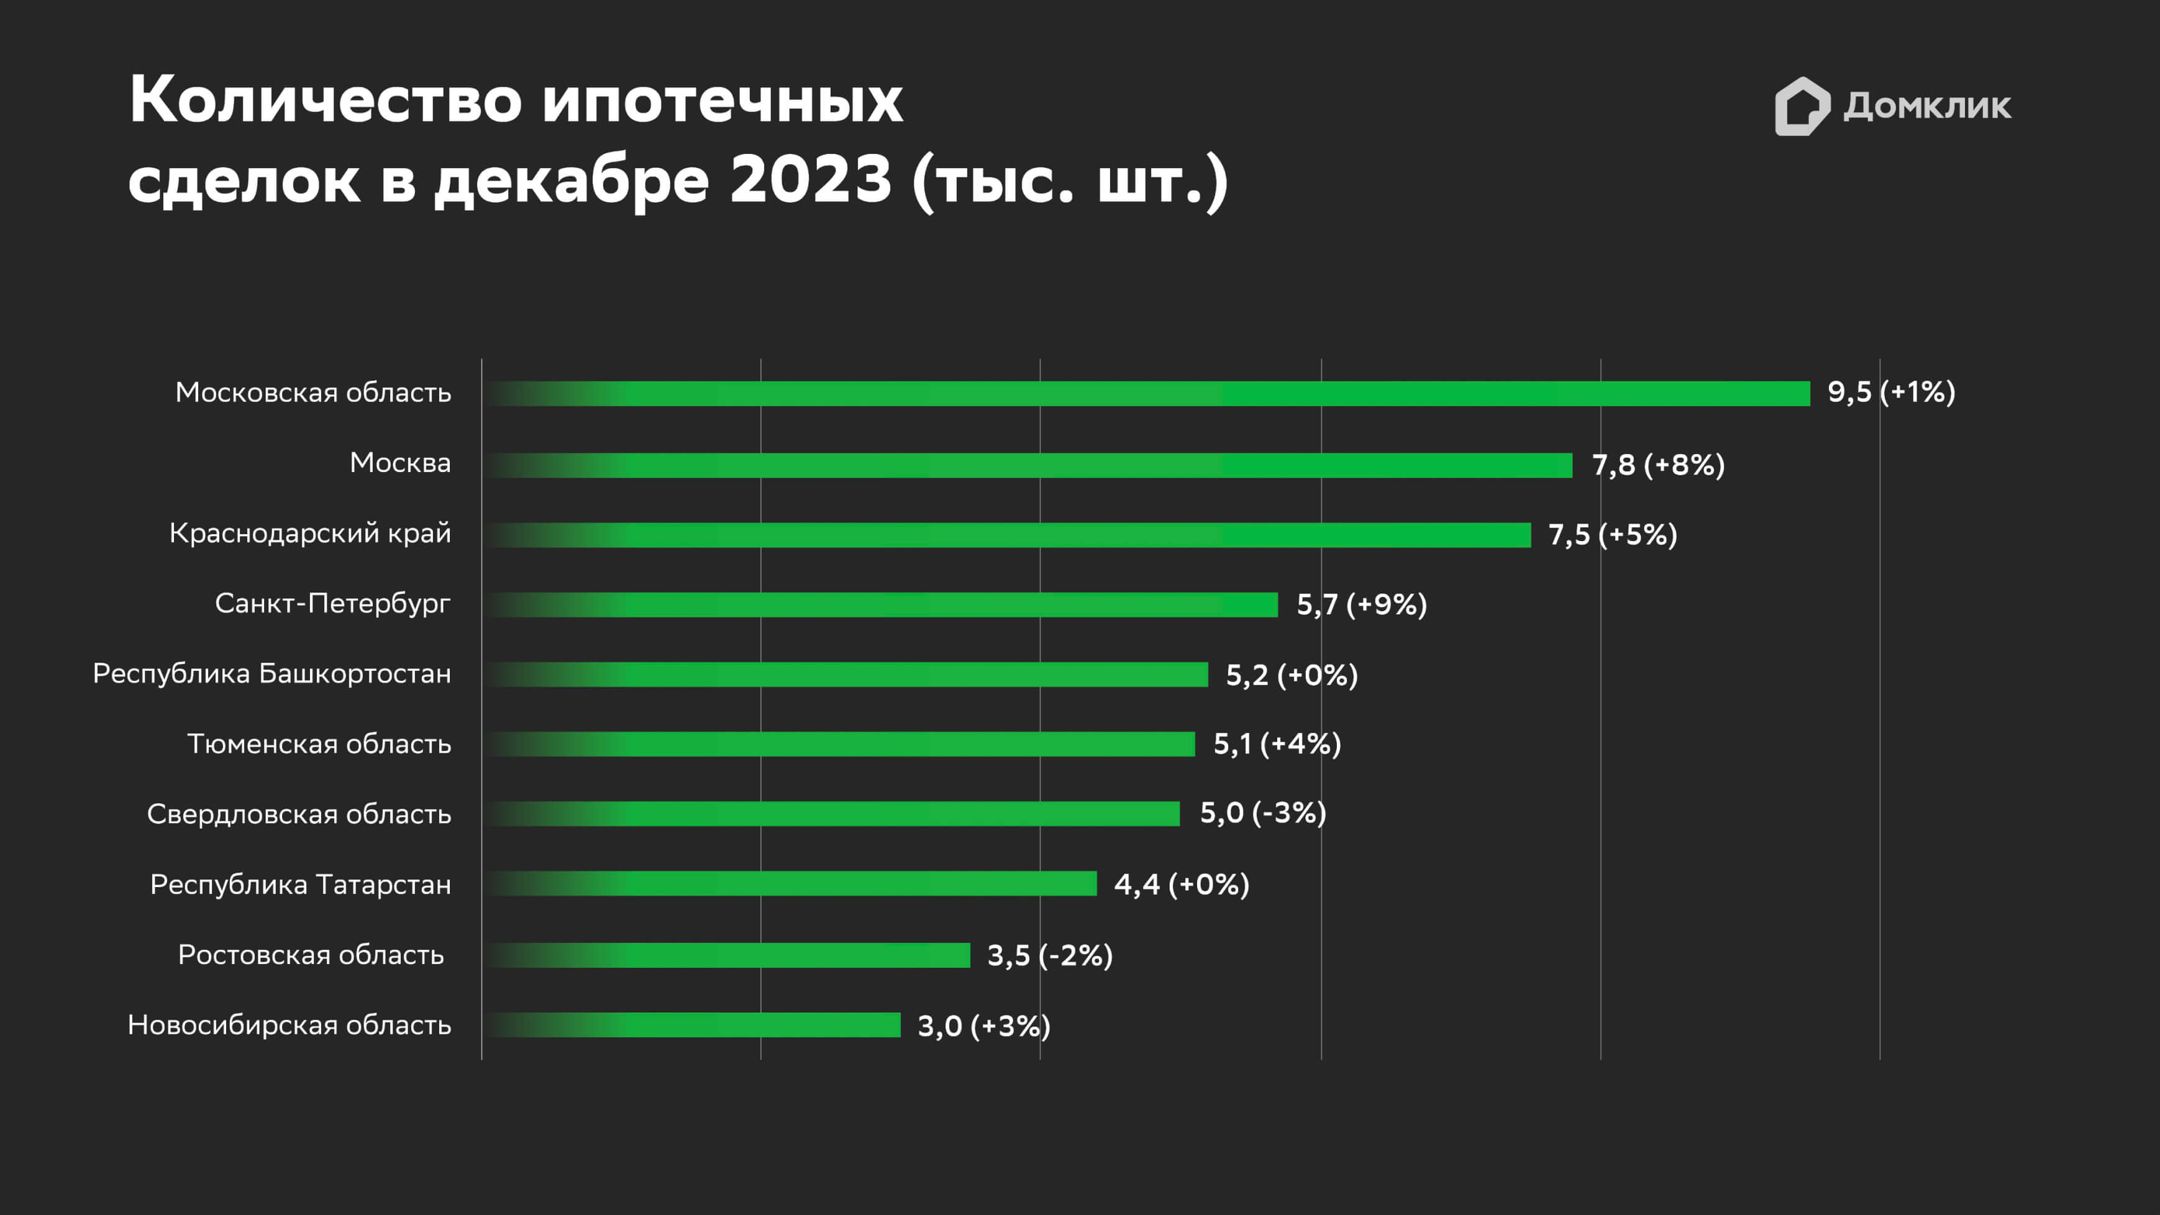 Топ-10 регионов РФ по количеству выдач ипотеки в декабре 2023 года. Процентный прирост в декабре 2023 года по отношению к ноябрю 2023 года для каждого региона показан в скобках. Данные Сбера